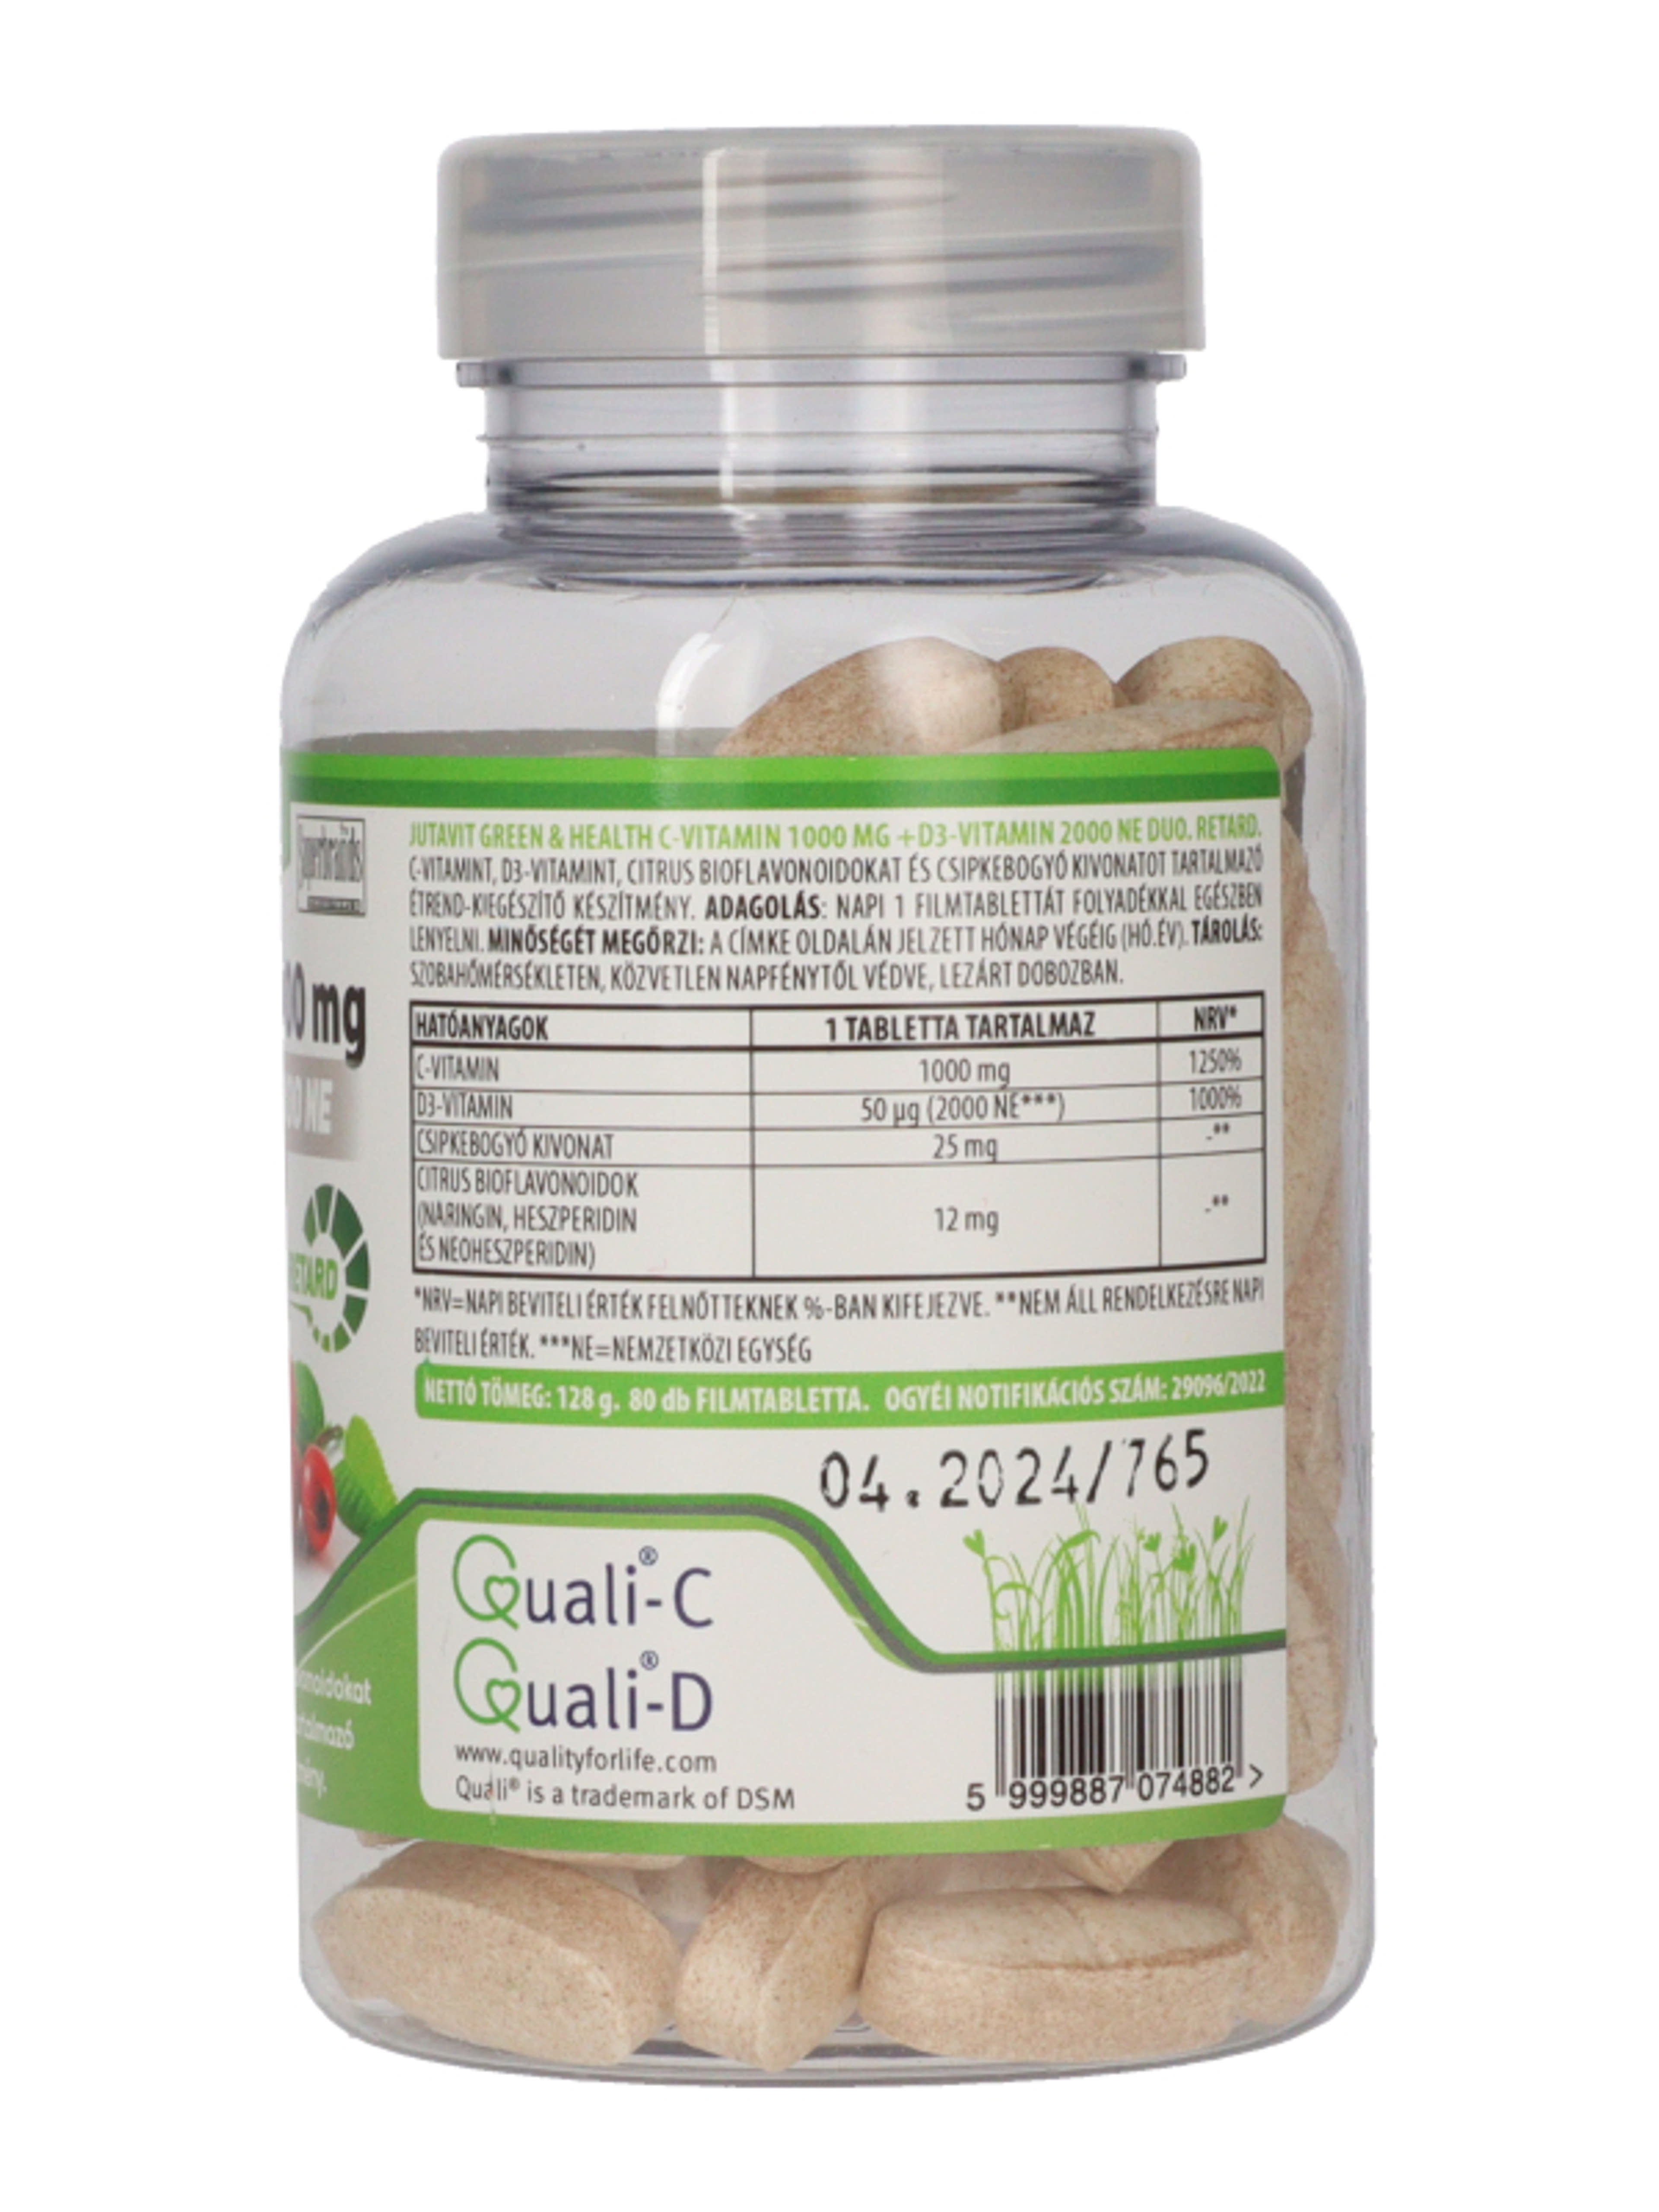 Jutavit Green & Health C-vitamin 1000 mg + D3- vitamin 2000 NE Duo étrend-kiegészítő filmtabletta - 80 db-5